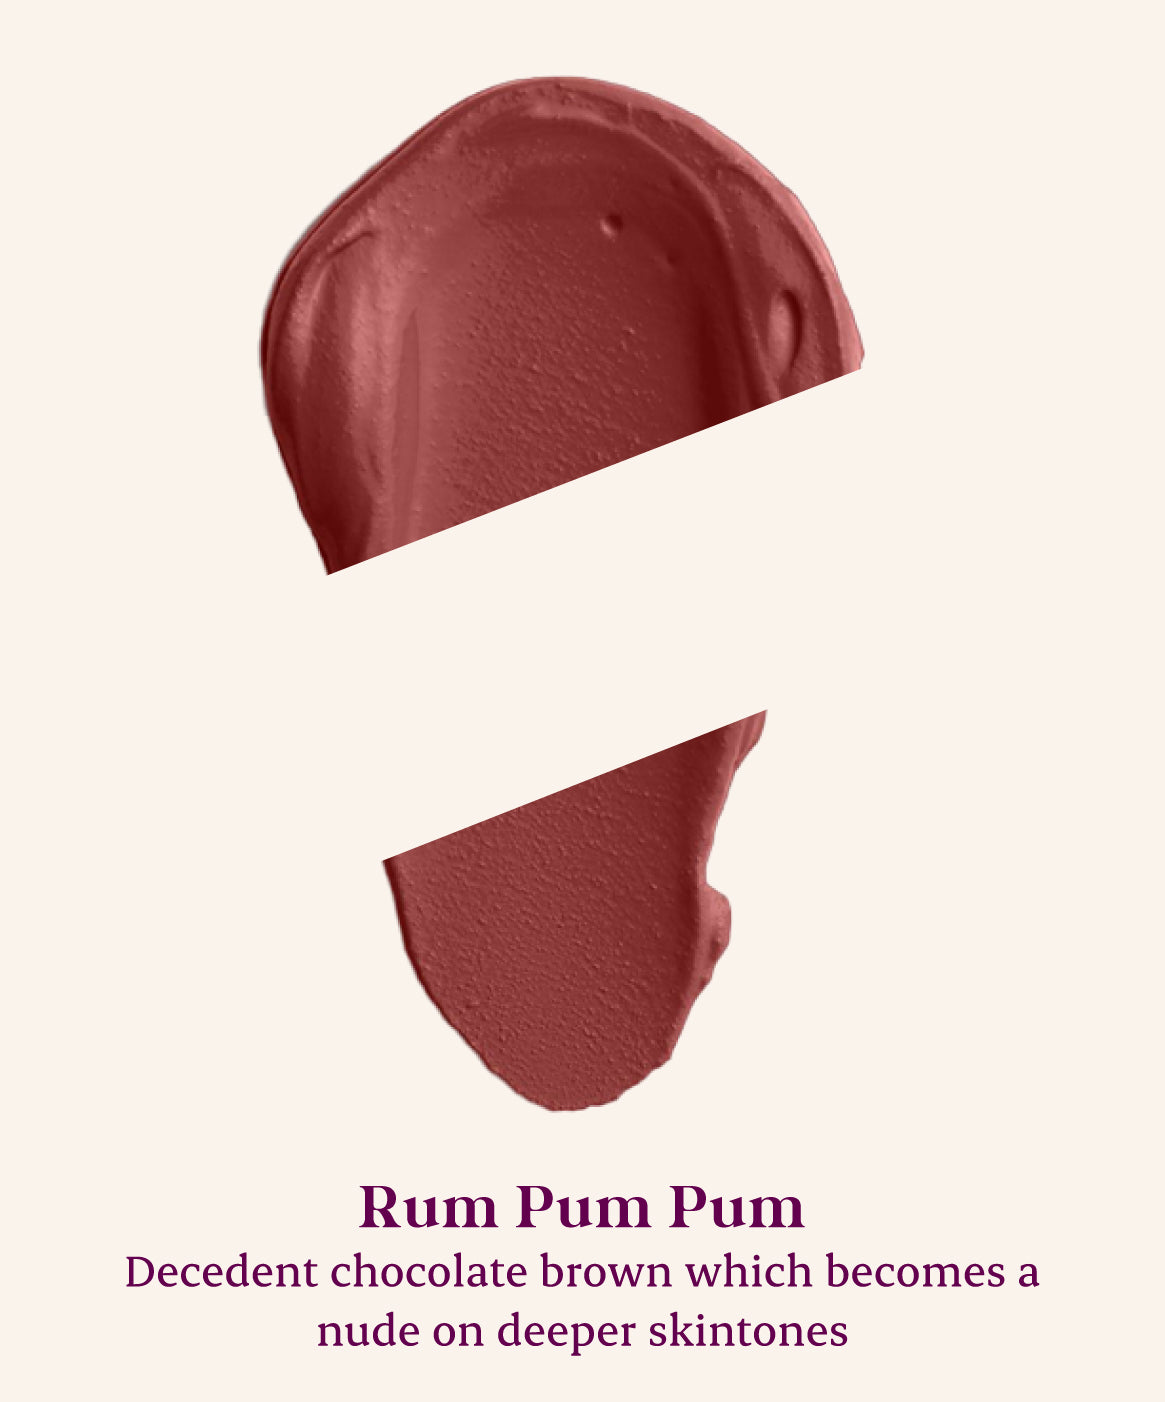 Rum Pum Pum 06 - Chocolate brown shade